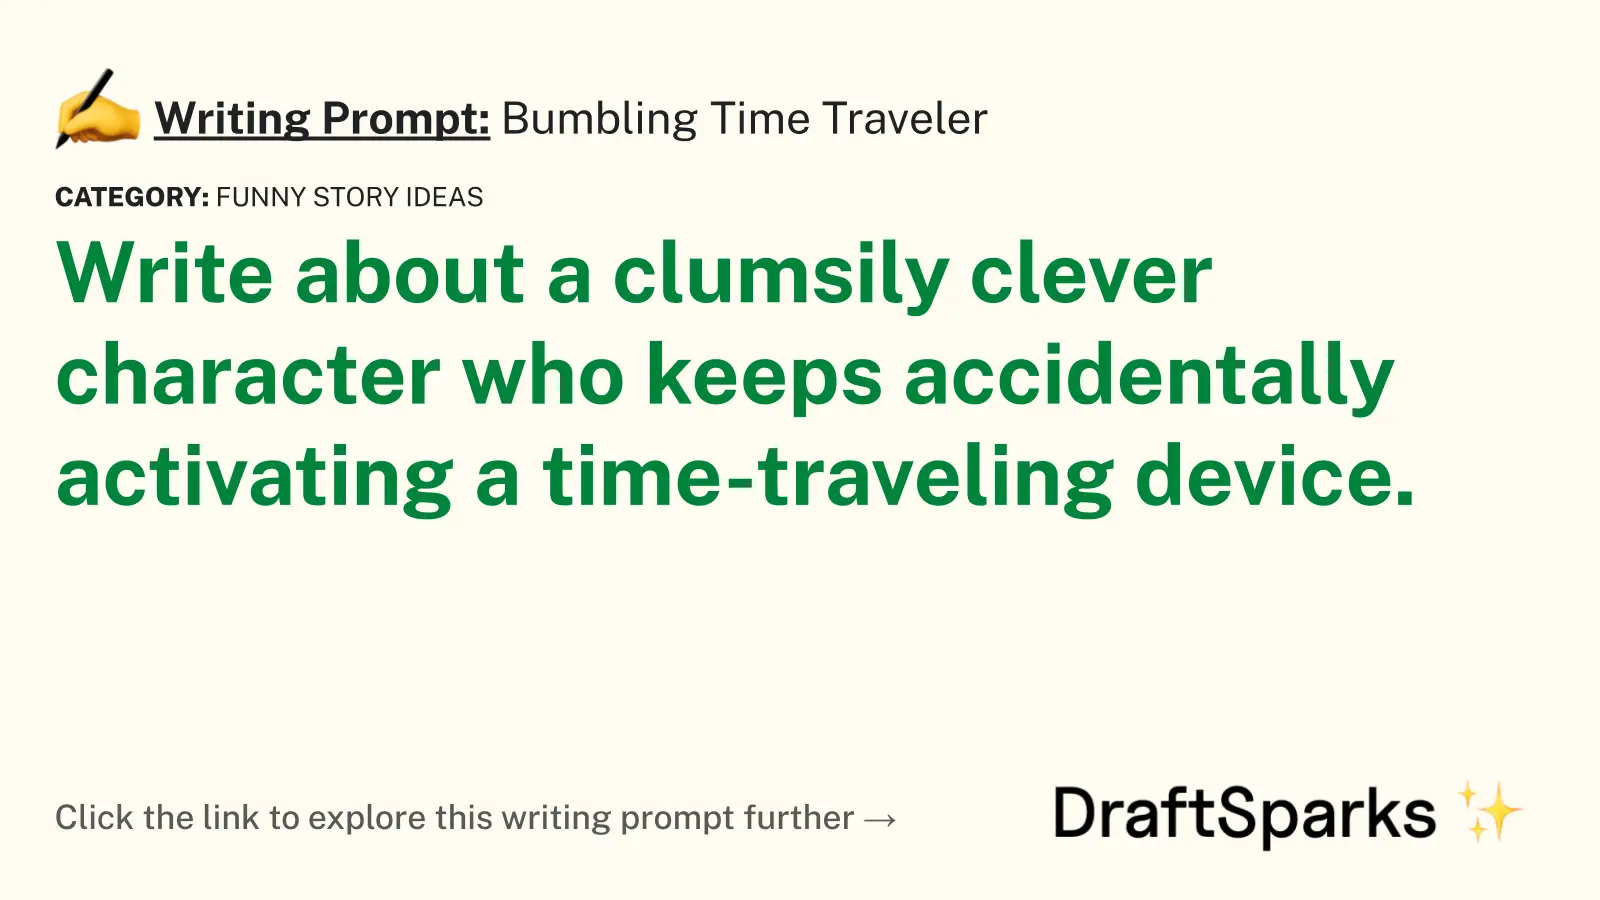 Bumbling Time Traveler